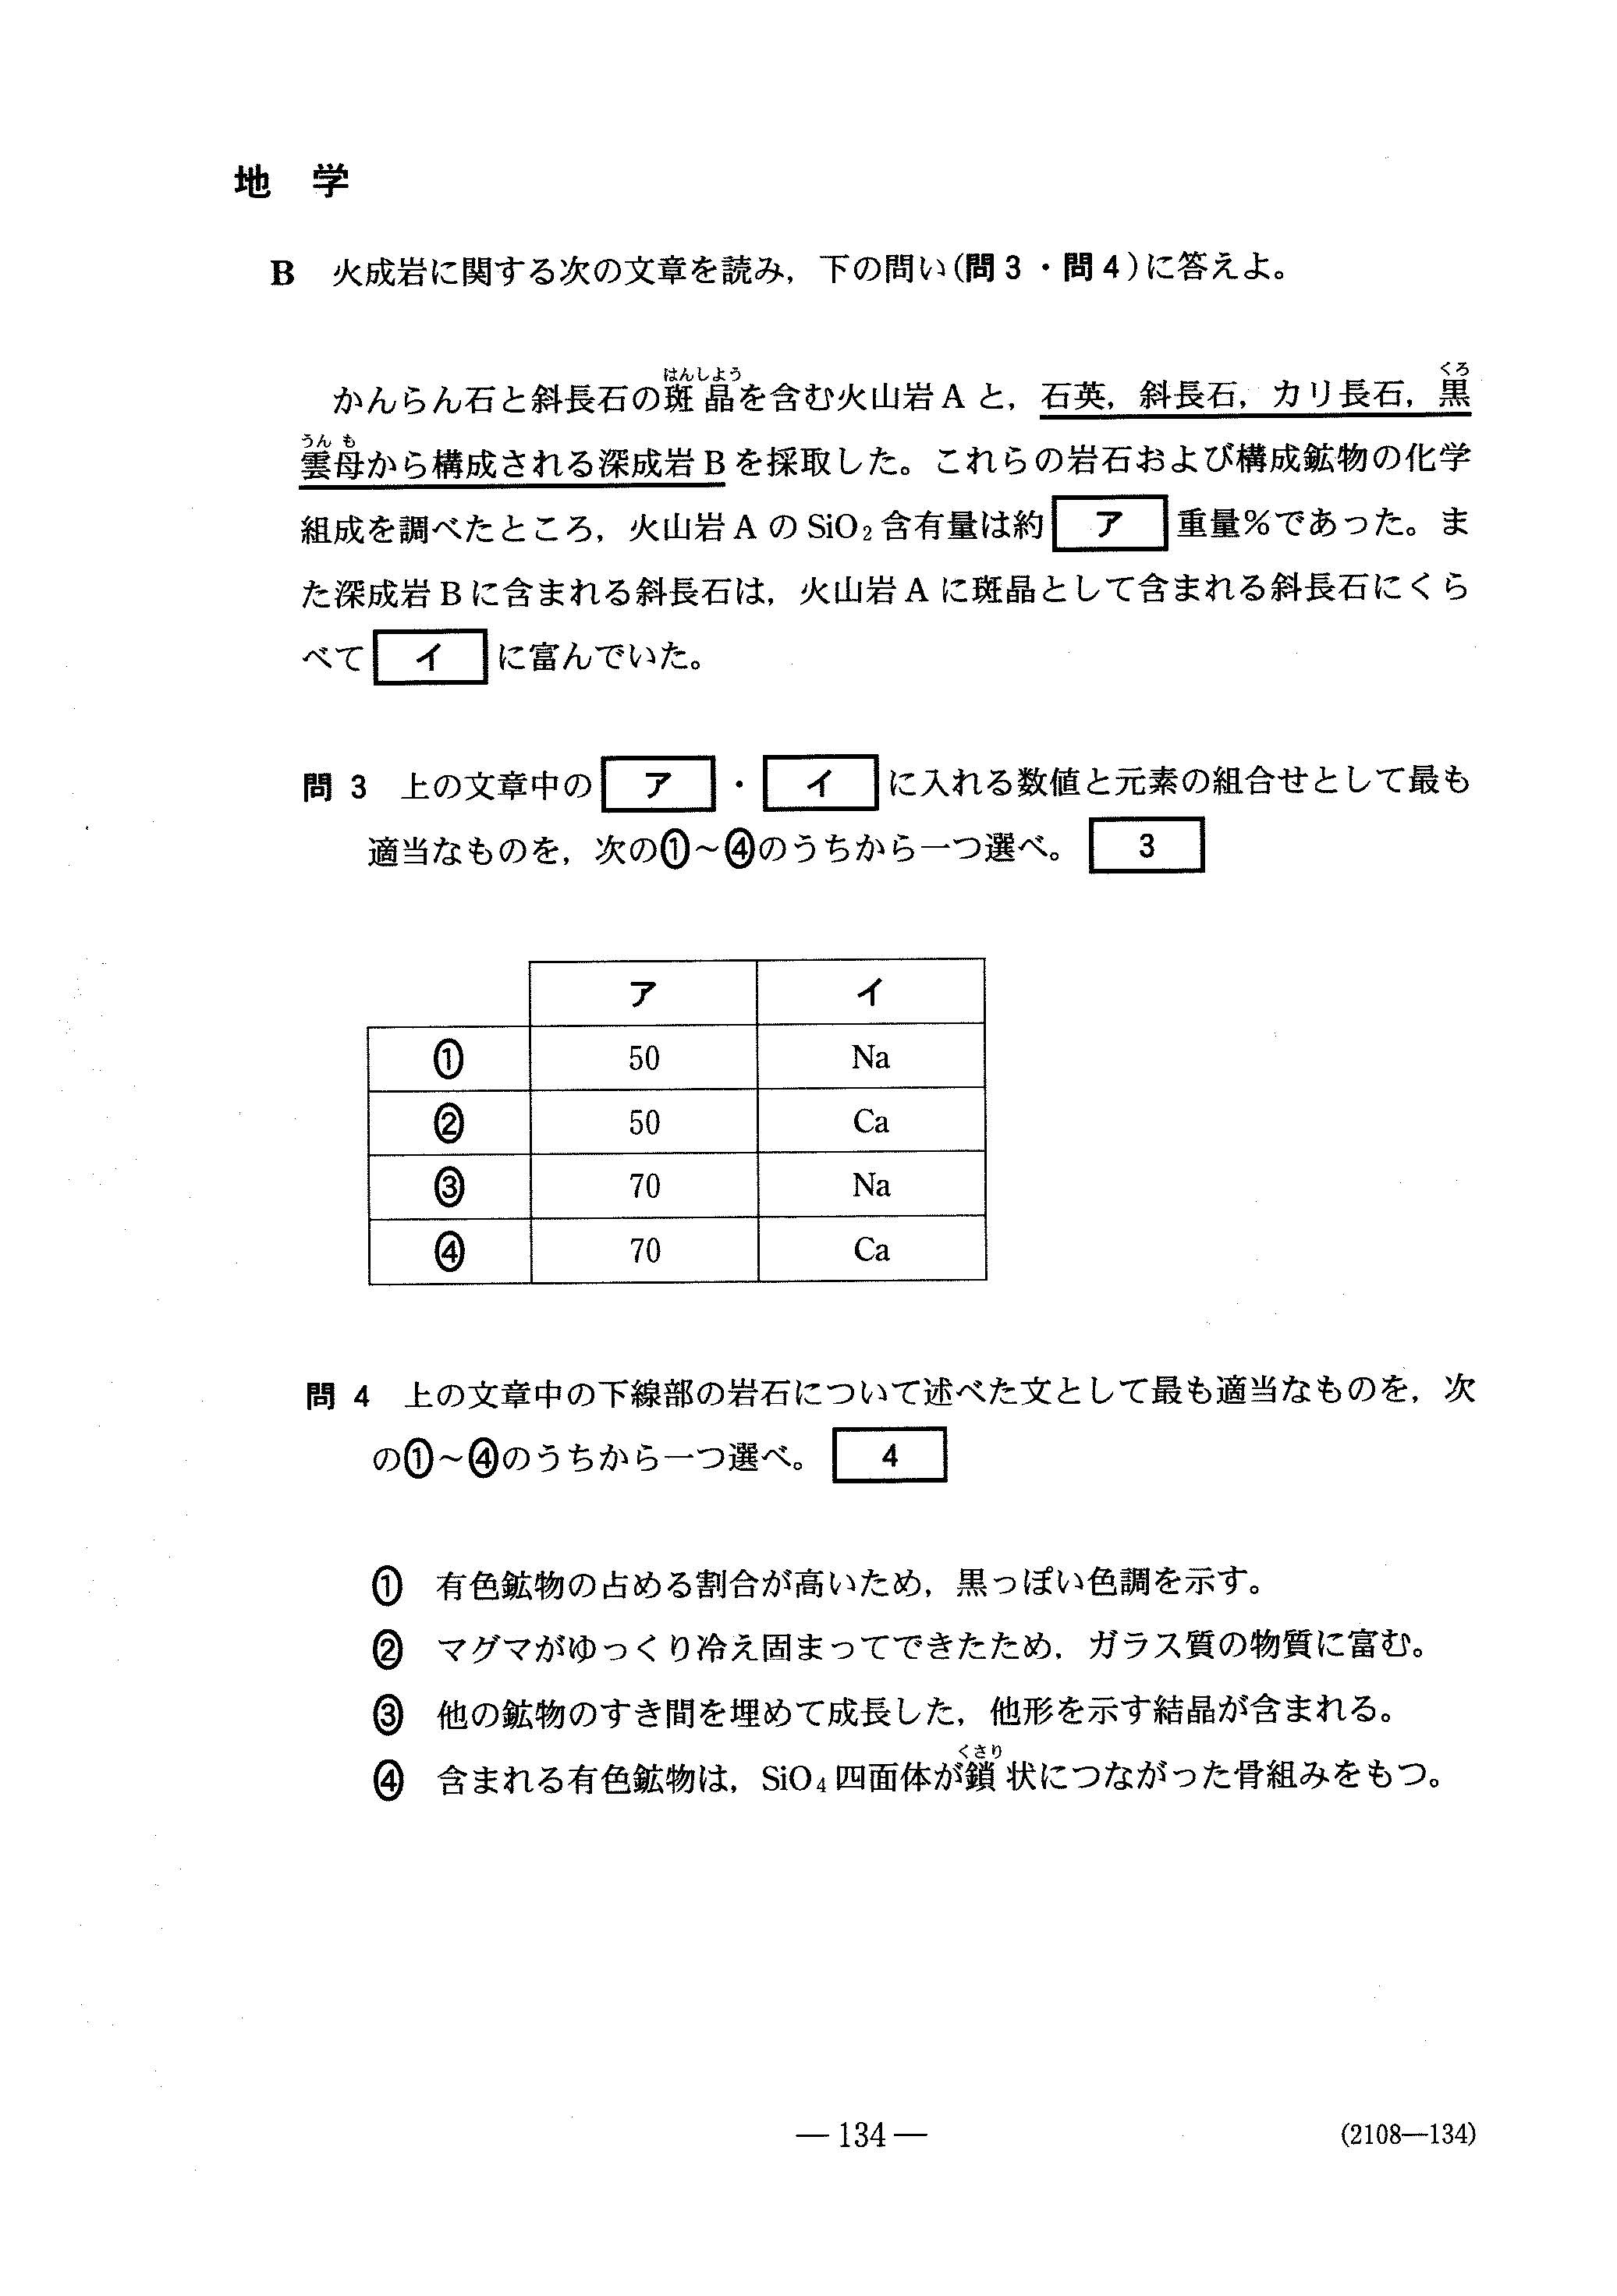 H30理科Ⅱ_地学 大学入試センター試験過去問